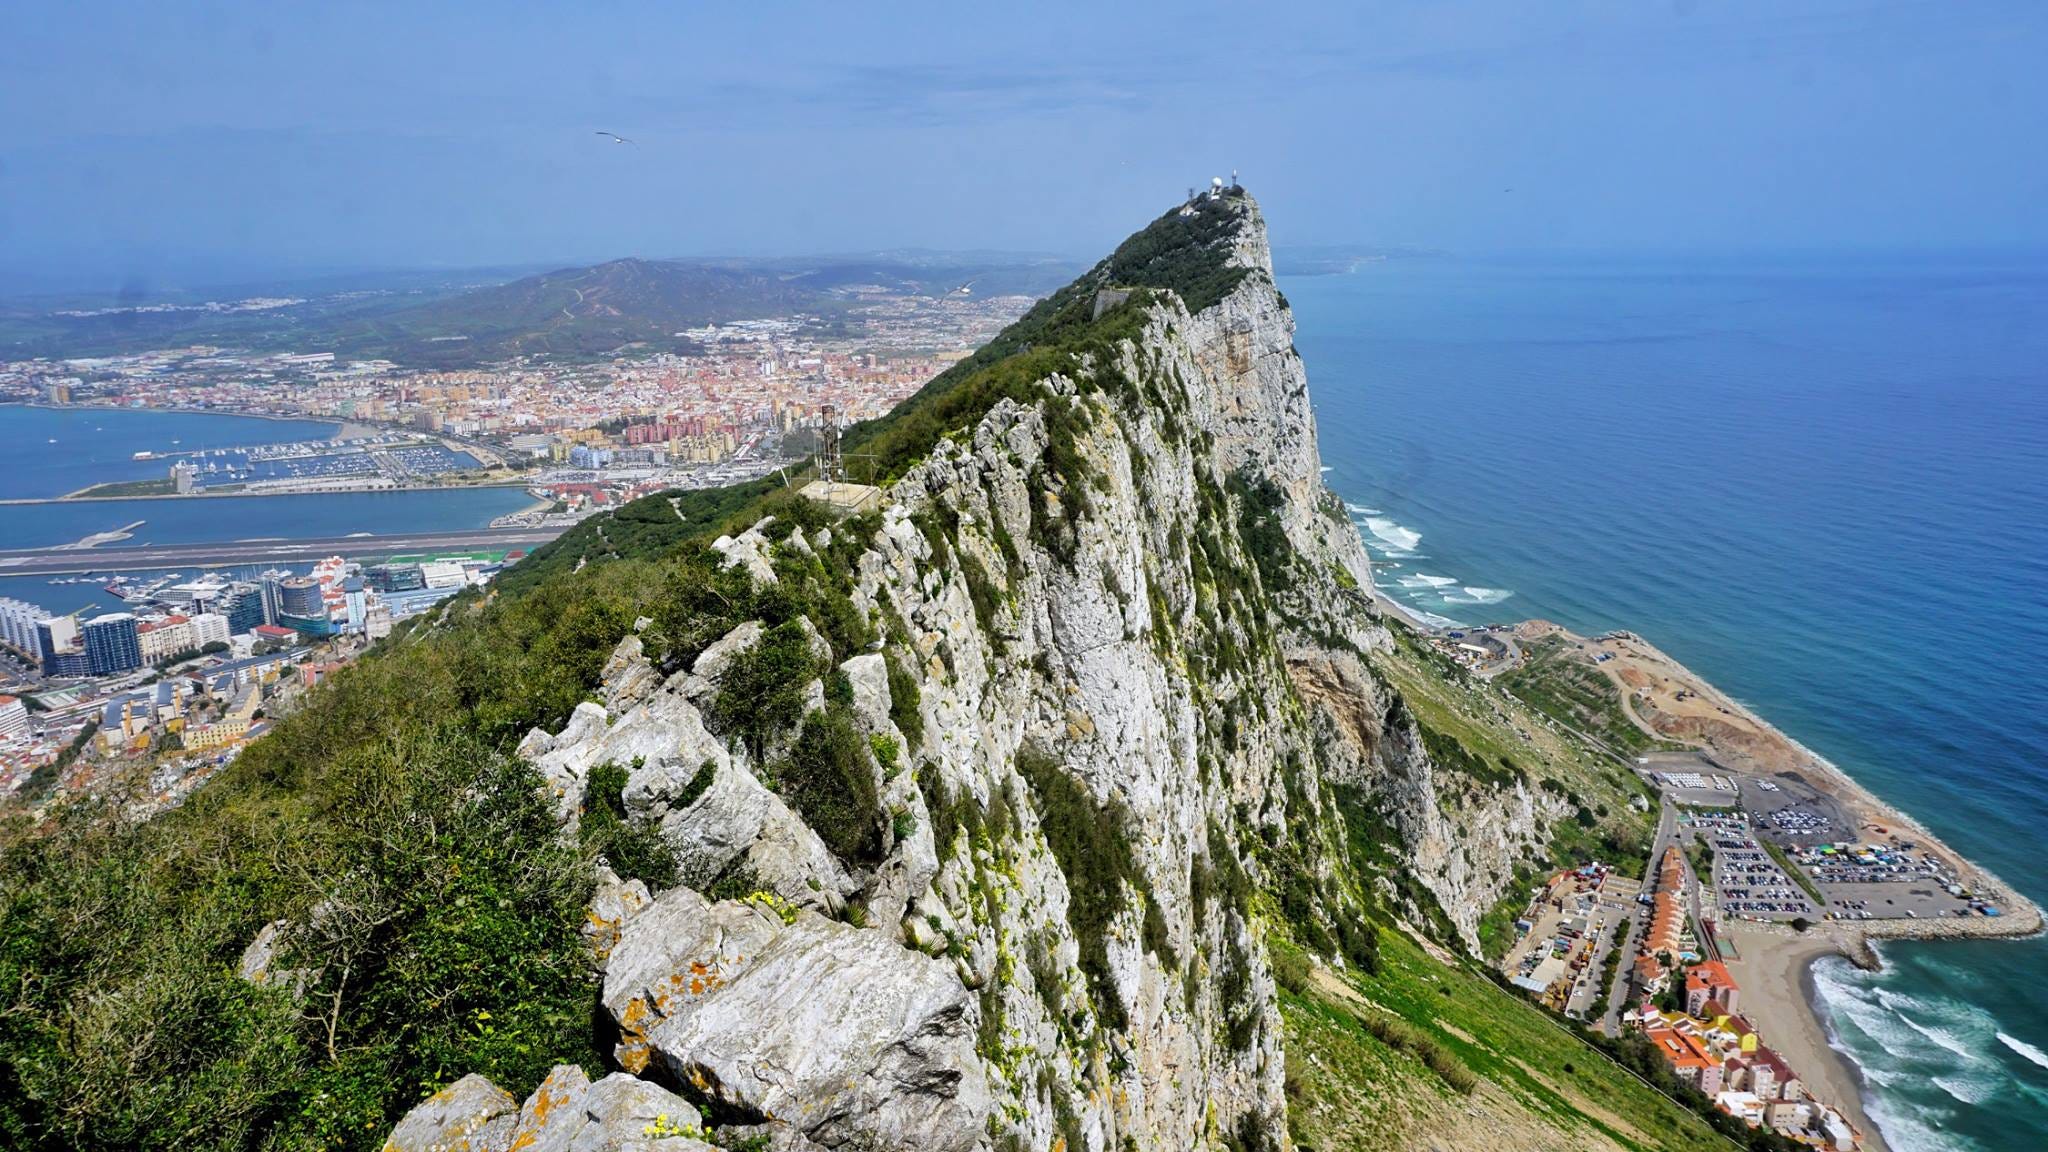 世界遠行: 歐洲最南端- 英屬直布羅陀Gibraltar. 或許是人生新巔峰了 ...